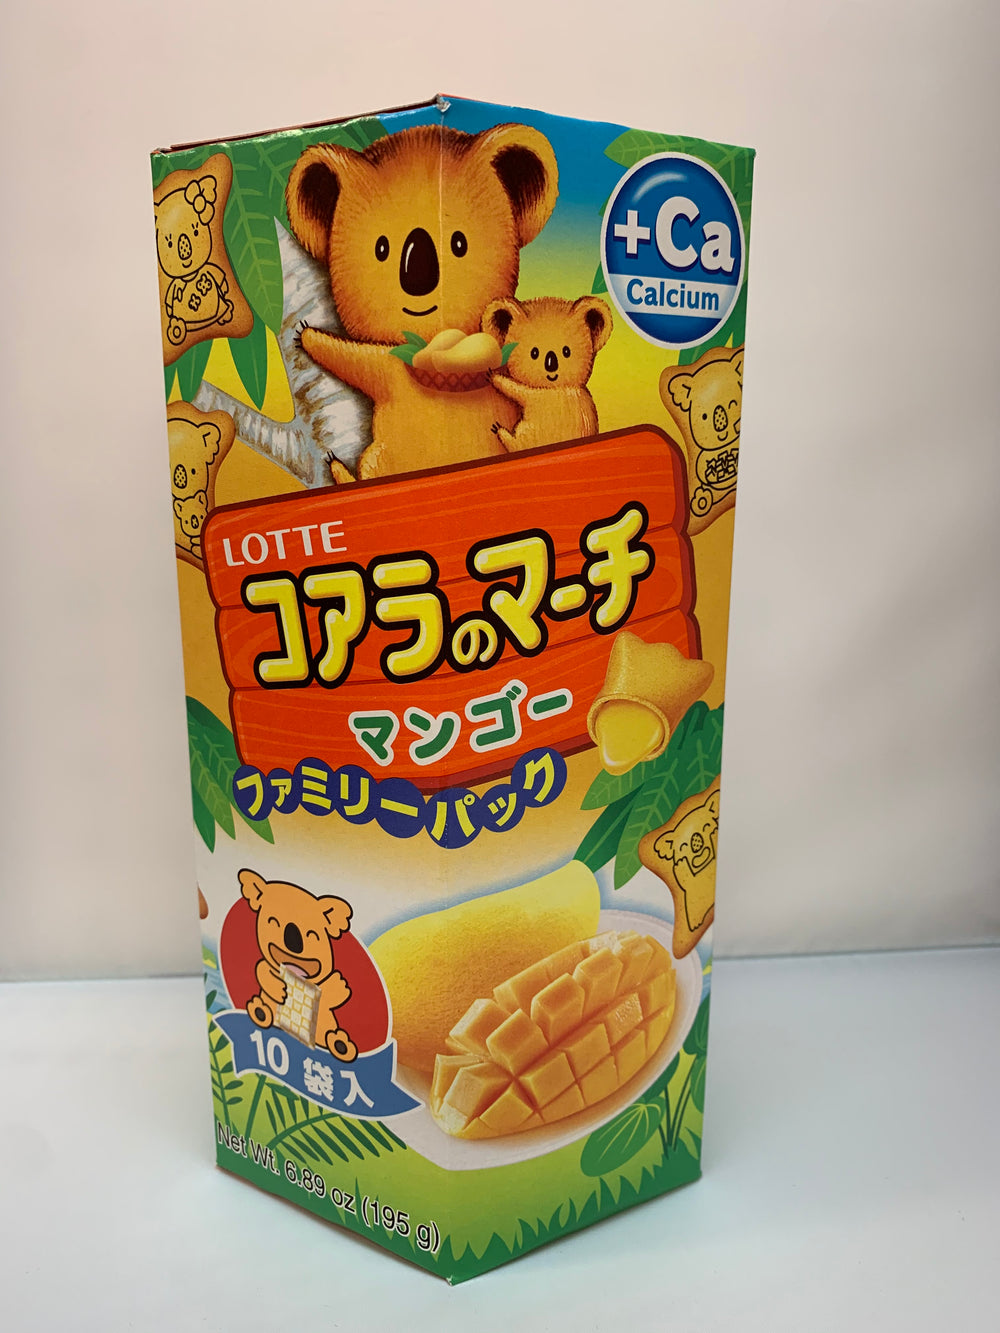 Koala's March Mango family Pack/ コアラのマーチ マンゴ  ファミリーパック195g 10 pack - Konbiniya Japan Centre